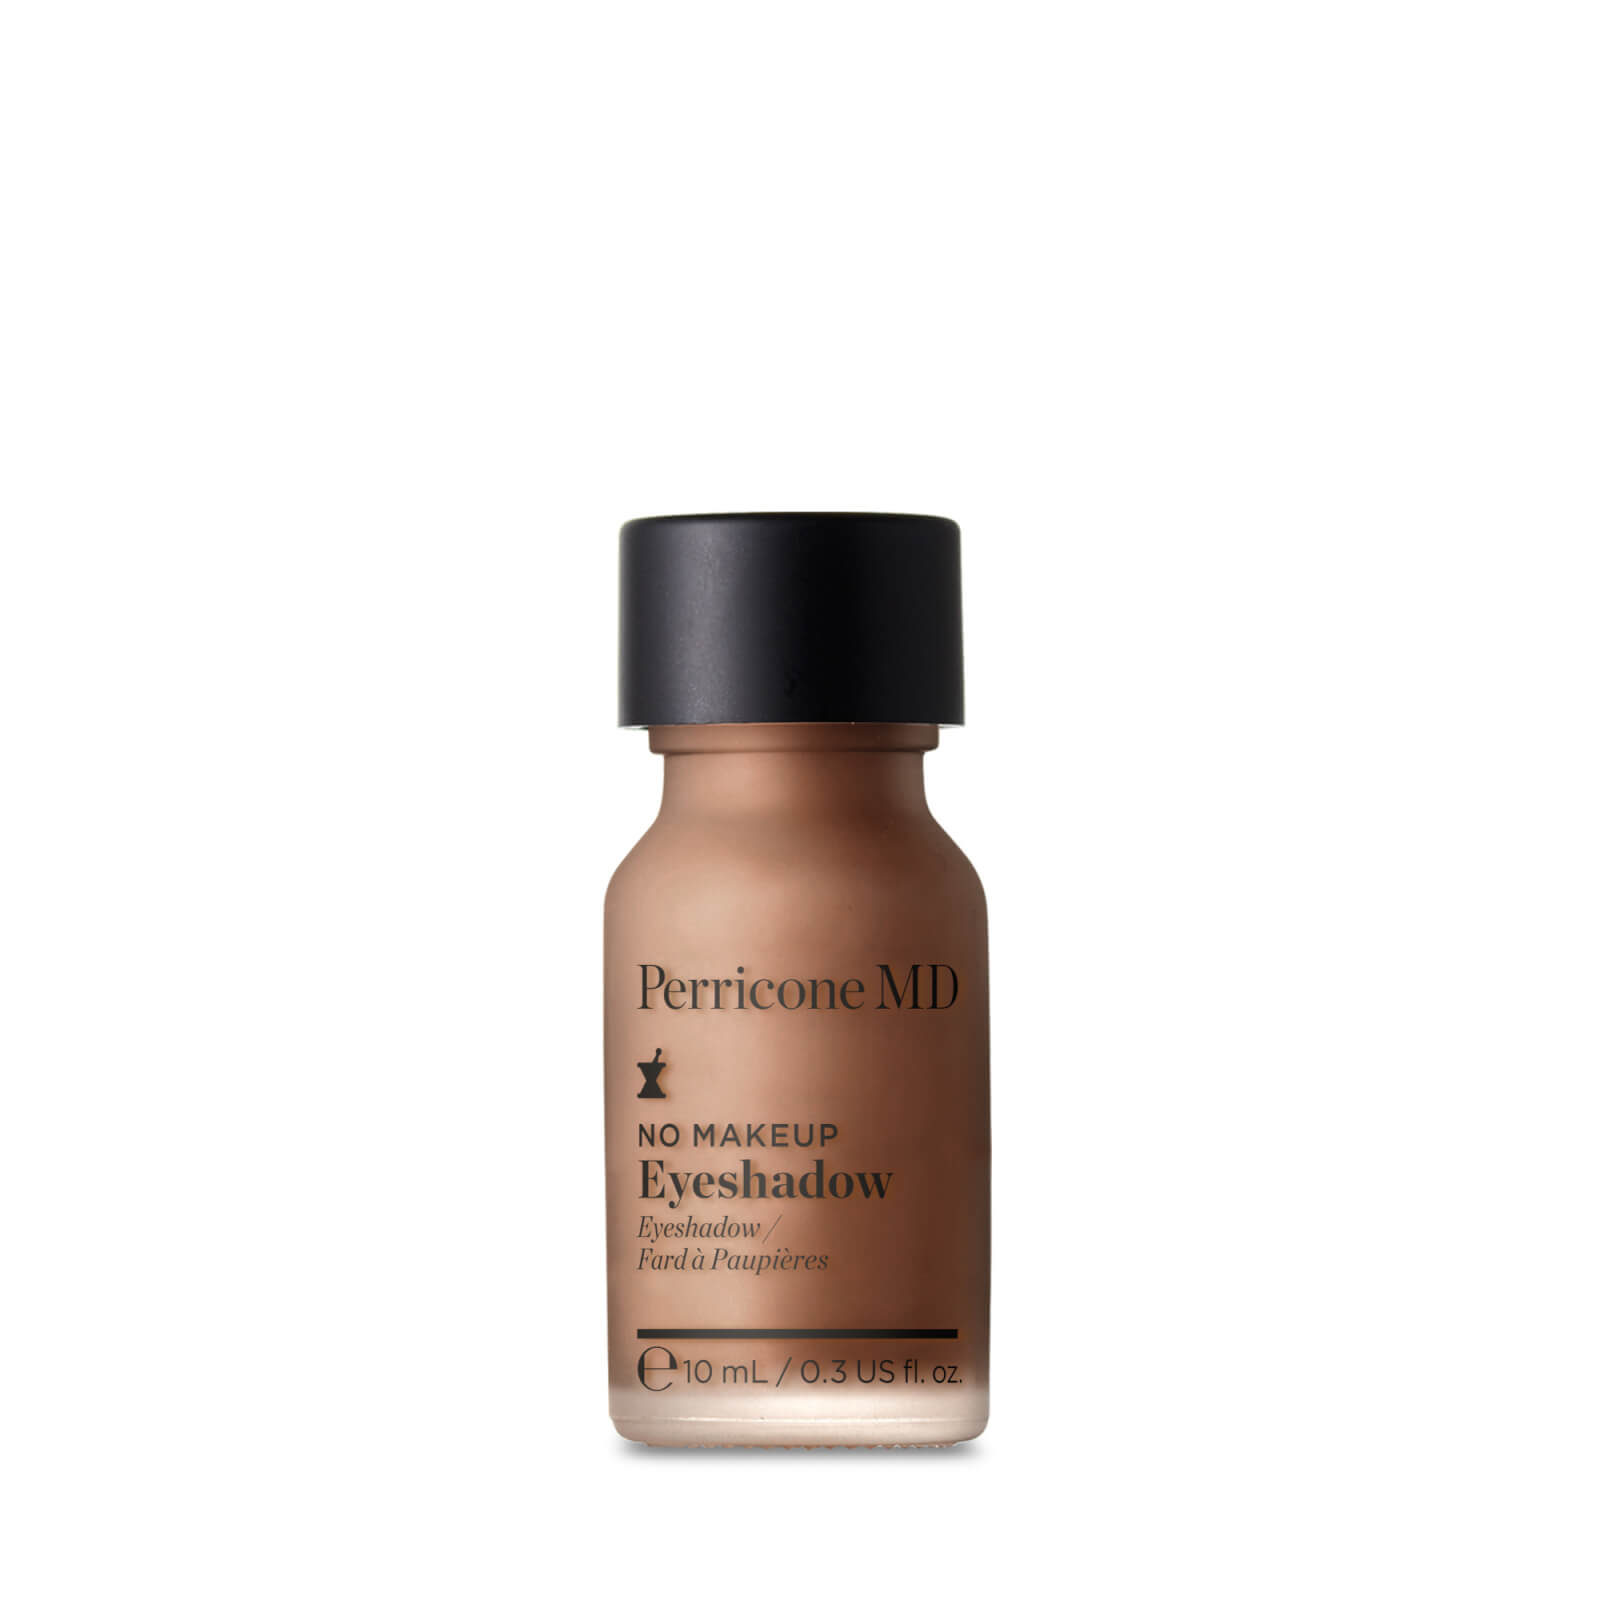 Perricone MD No Makeup Eyeshadow - Shade 4